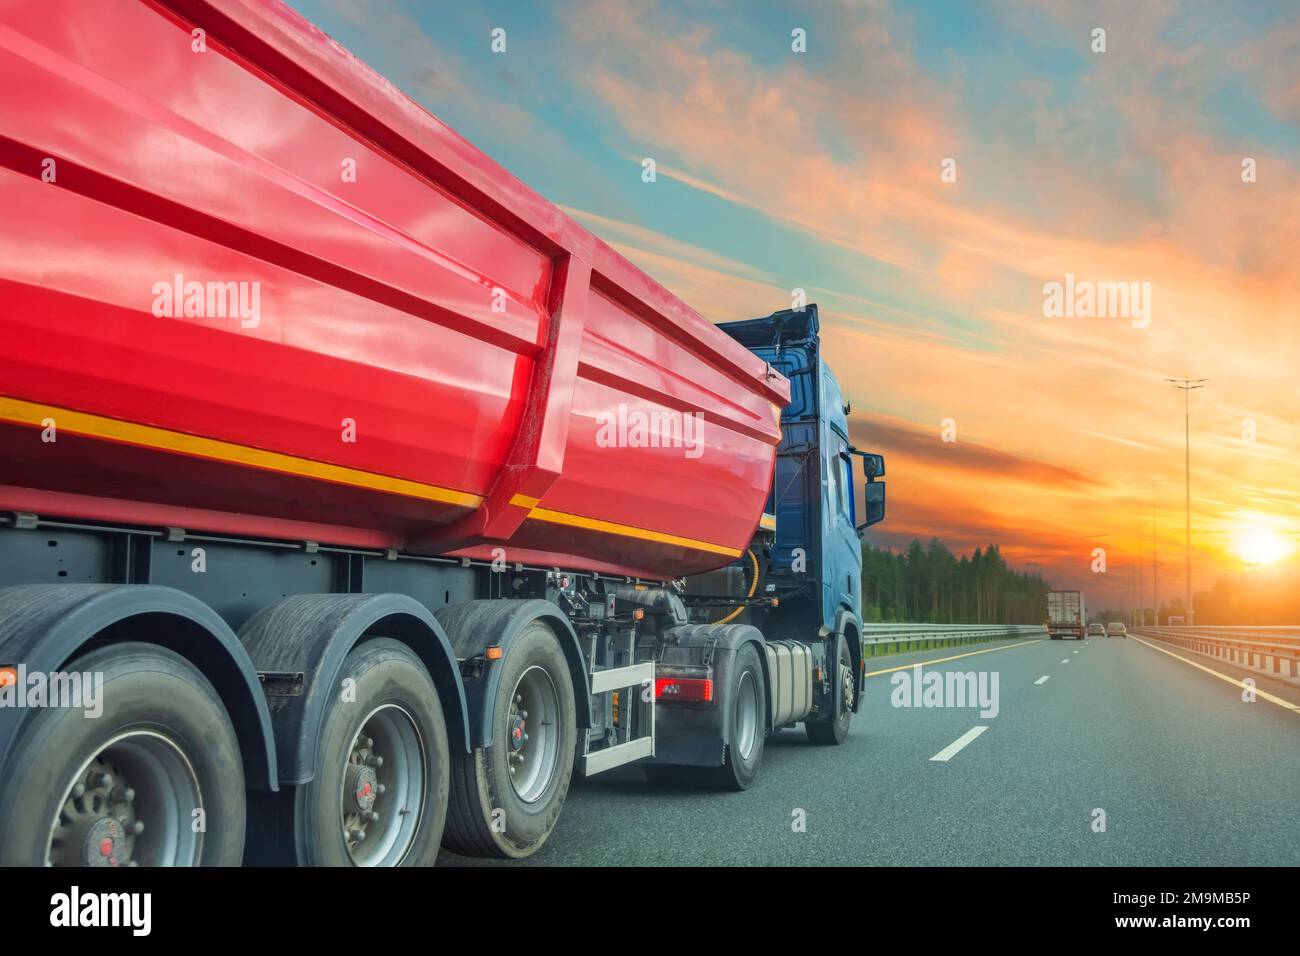 El remolque rojo grande del camión de volteo monta en la carretera, en el cielo la puesta del sol brilla sobre el horizonte Foto de stock